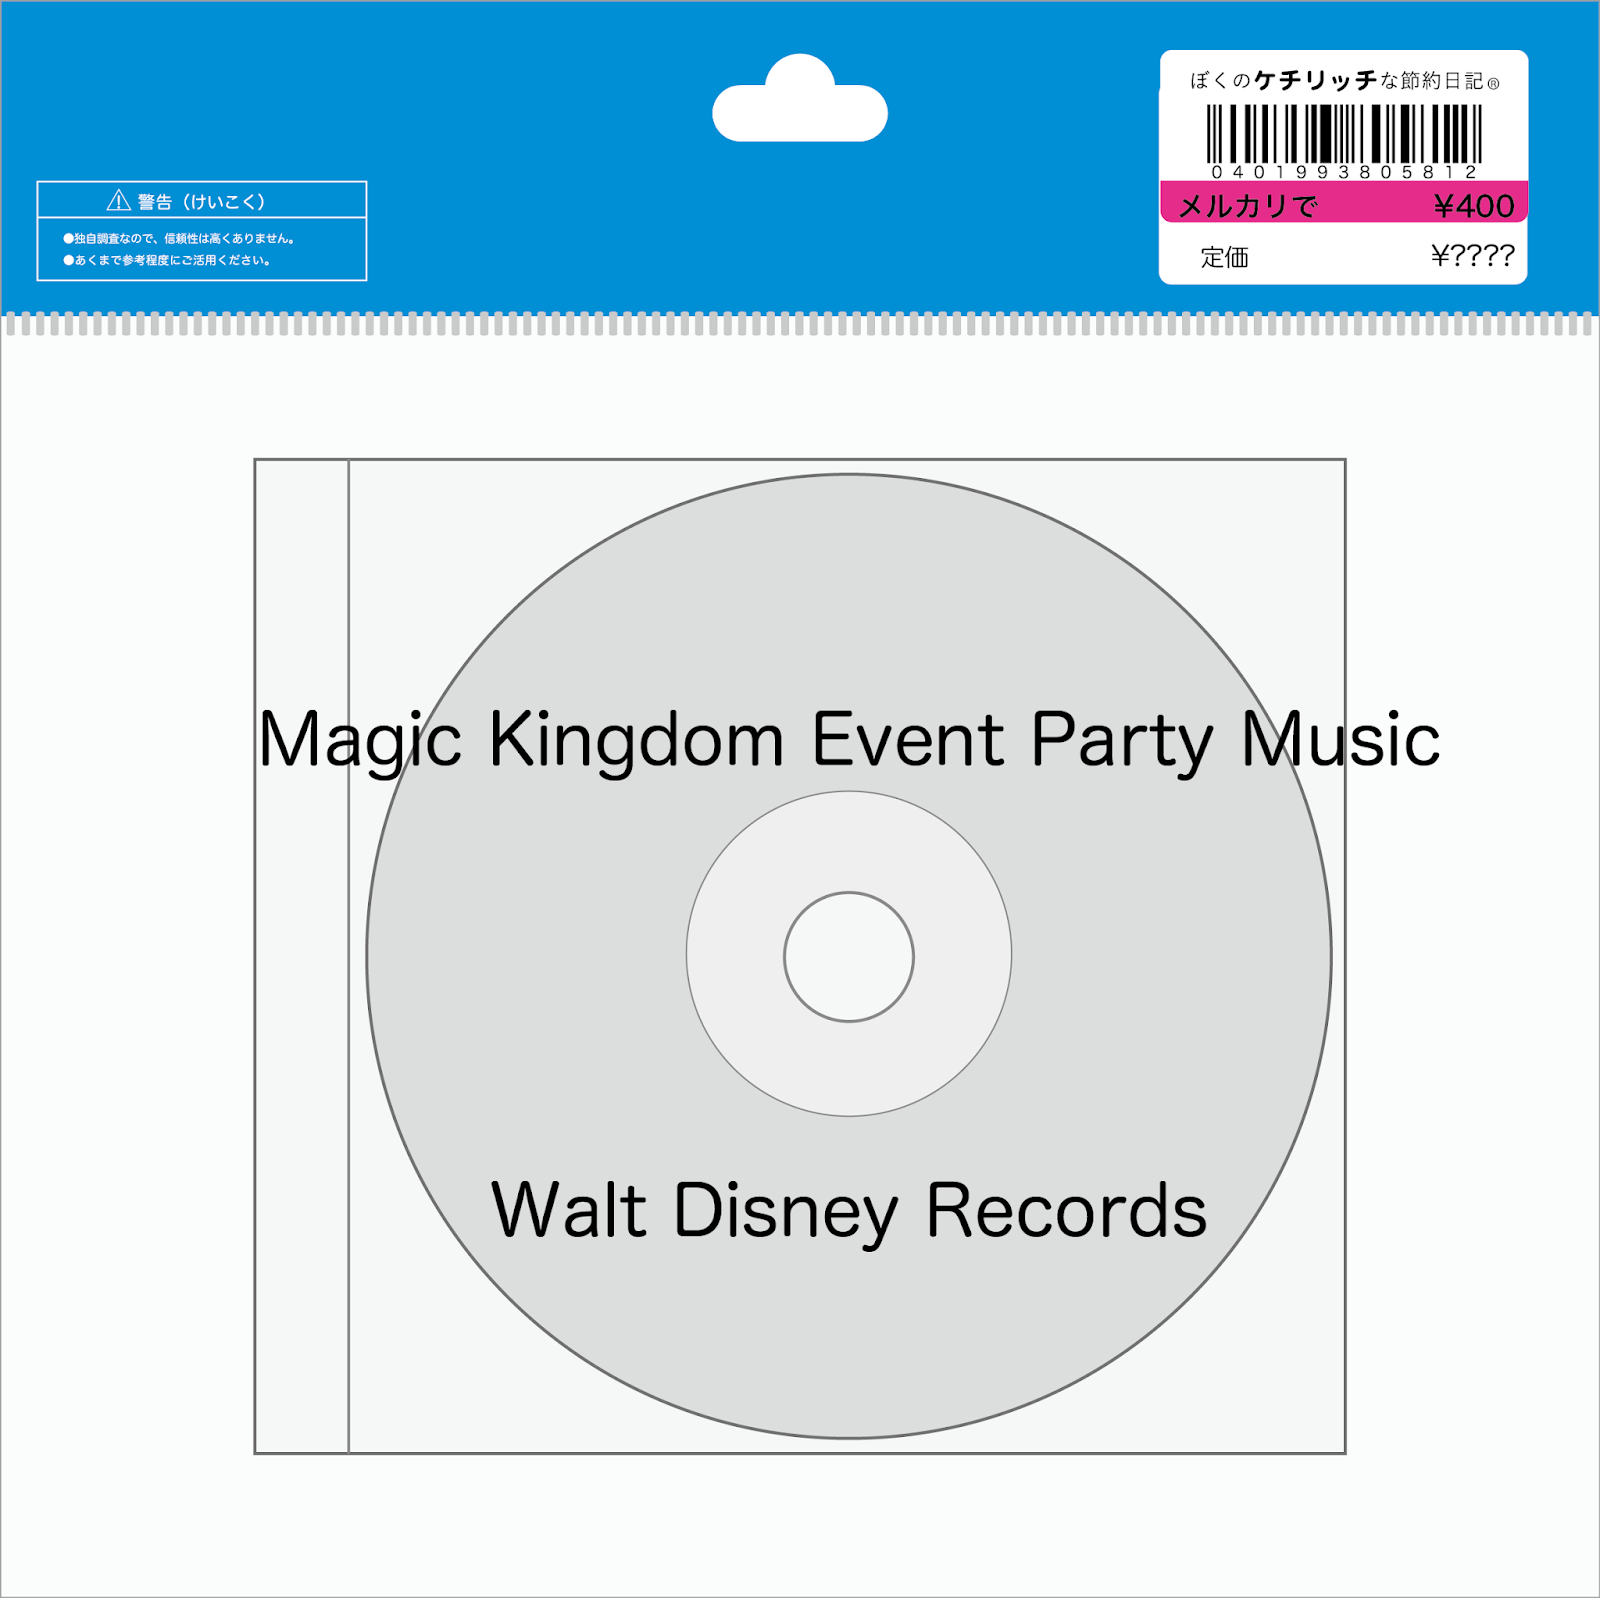 ディズニーの激レアcd Wdw Bgm Magic Kingdom Event Party Music を買ってみた ぼくのケチリッチな節約日記